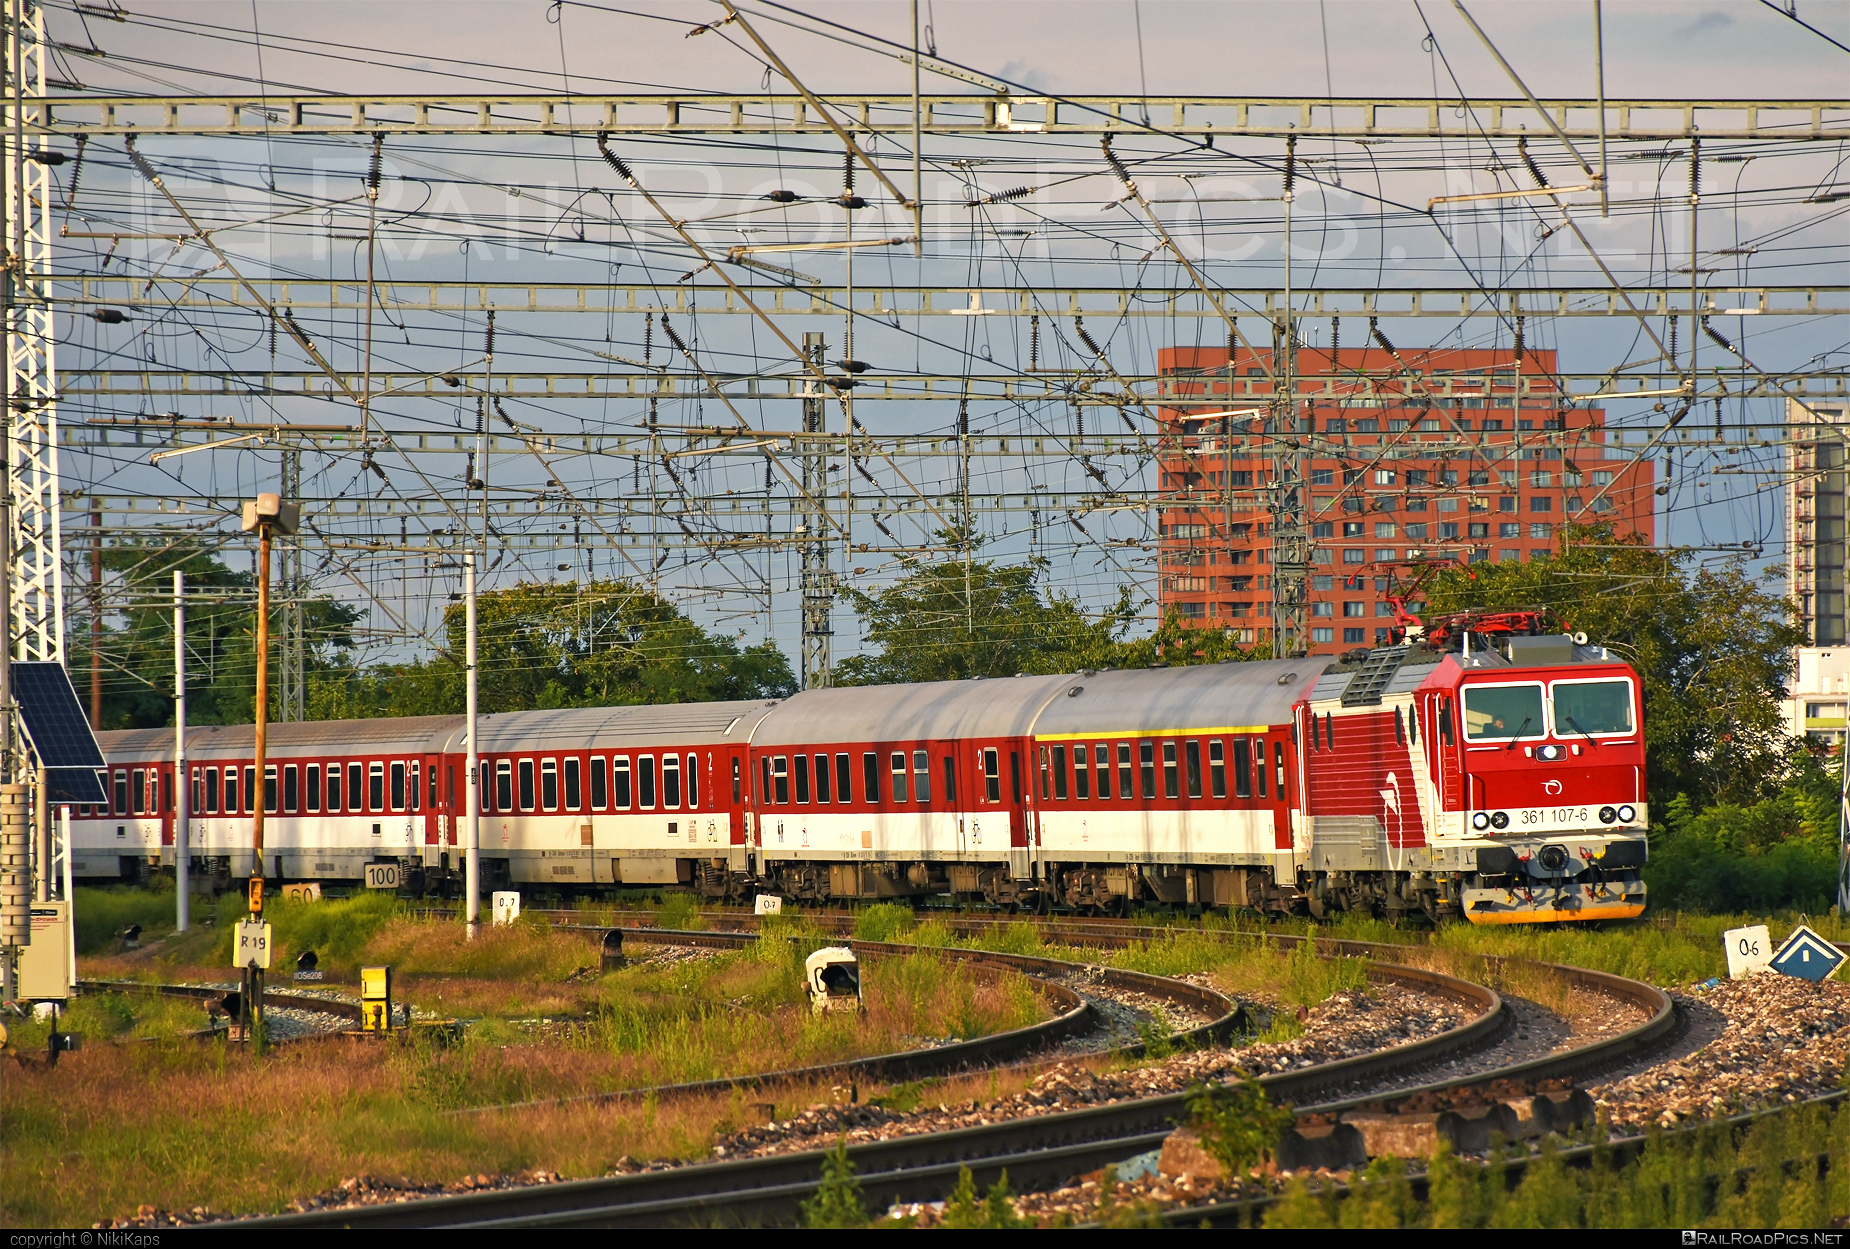 ŽOS Vrútky Class 361.1 - 361 107-6 operated by Železničná Spoločnost' Slovensko, a.s. #ZeleznicnaSpolocnostSlovensko #locomotive361 #locomotive3611 #zosvrutky #zssk